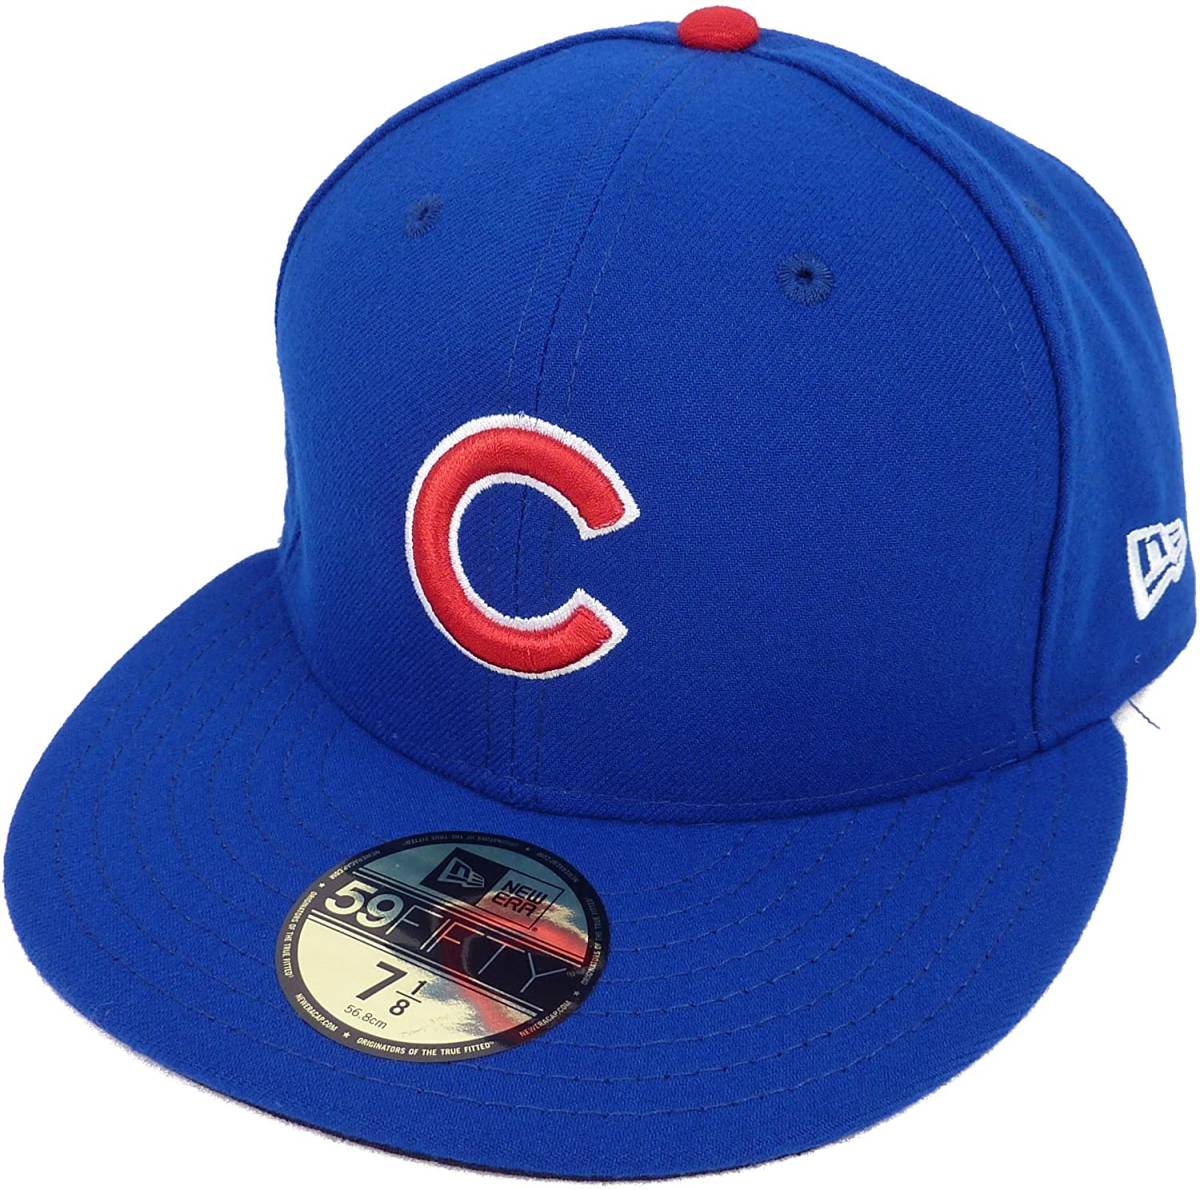 New Era ニューエラ 59FIFTY MLB Chicago Cubs シカゴ カブス ベースボールキャップ (7 1/8 56.8cm)【並行輸入品】